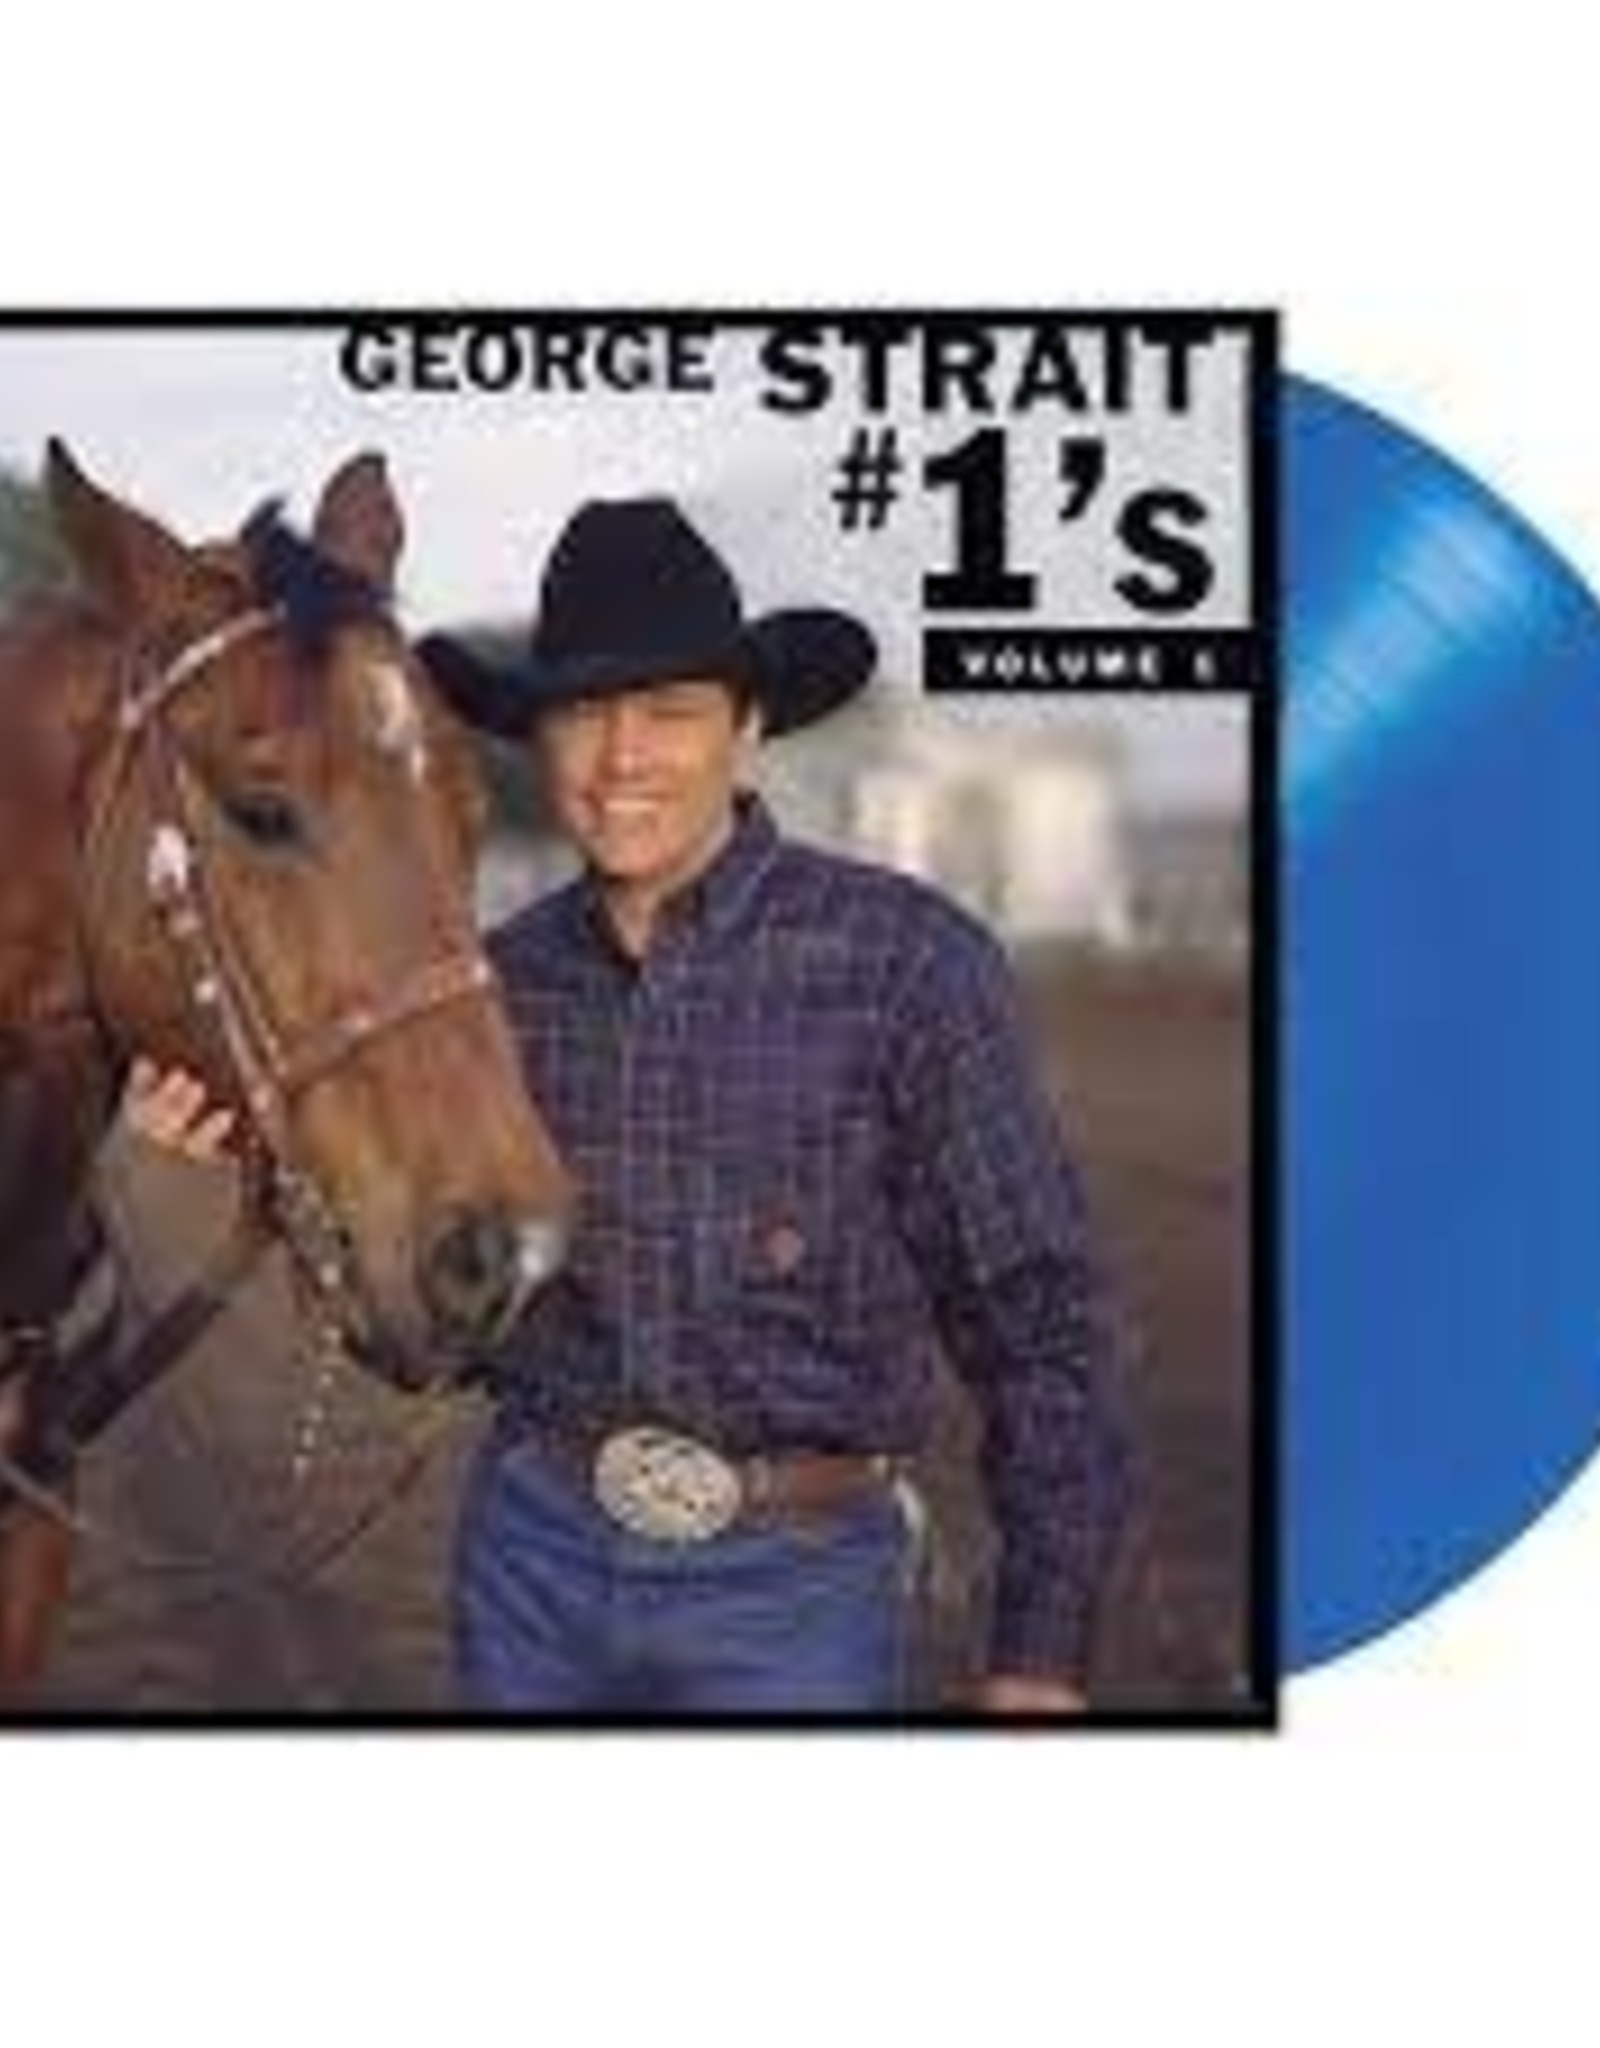 George Strait #1's Volume 1